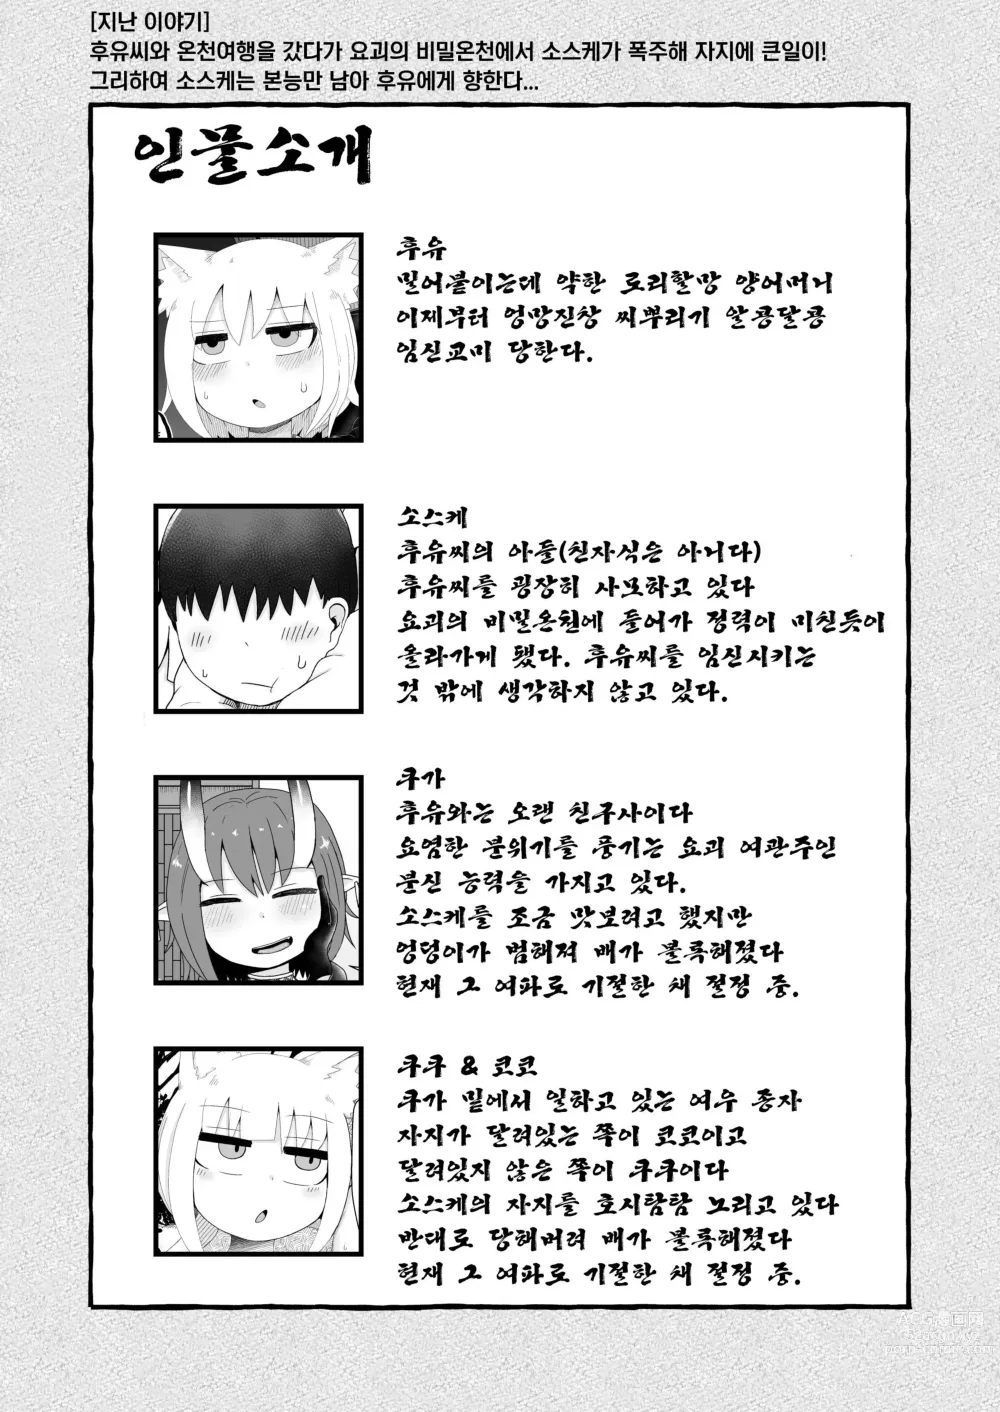 Page 3 of doujinshi 로리할망 양어머니는 밀어붙히기에 약하다 7